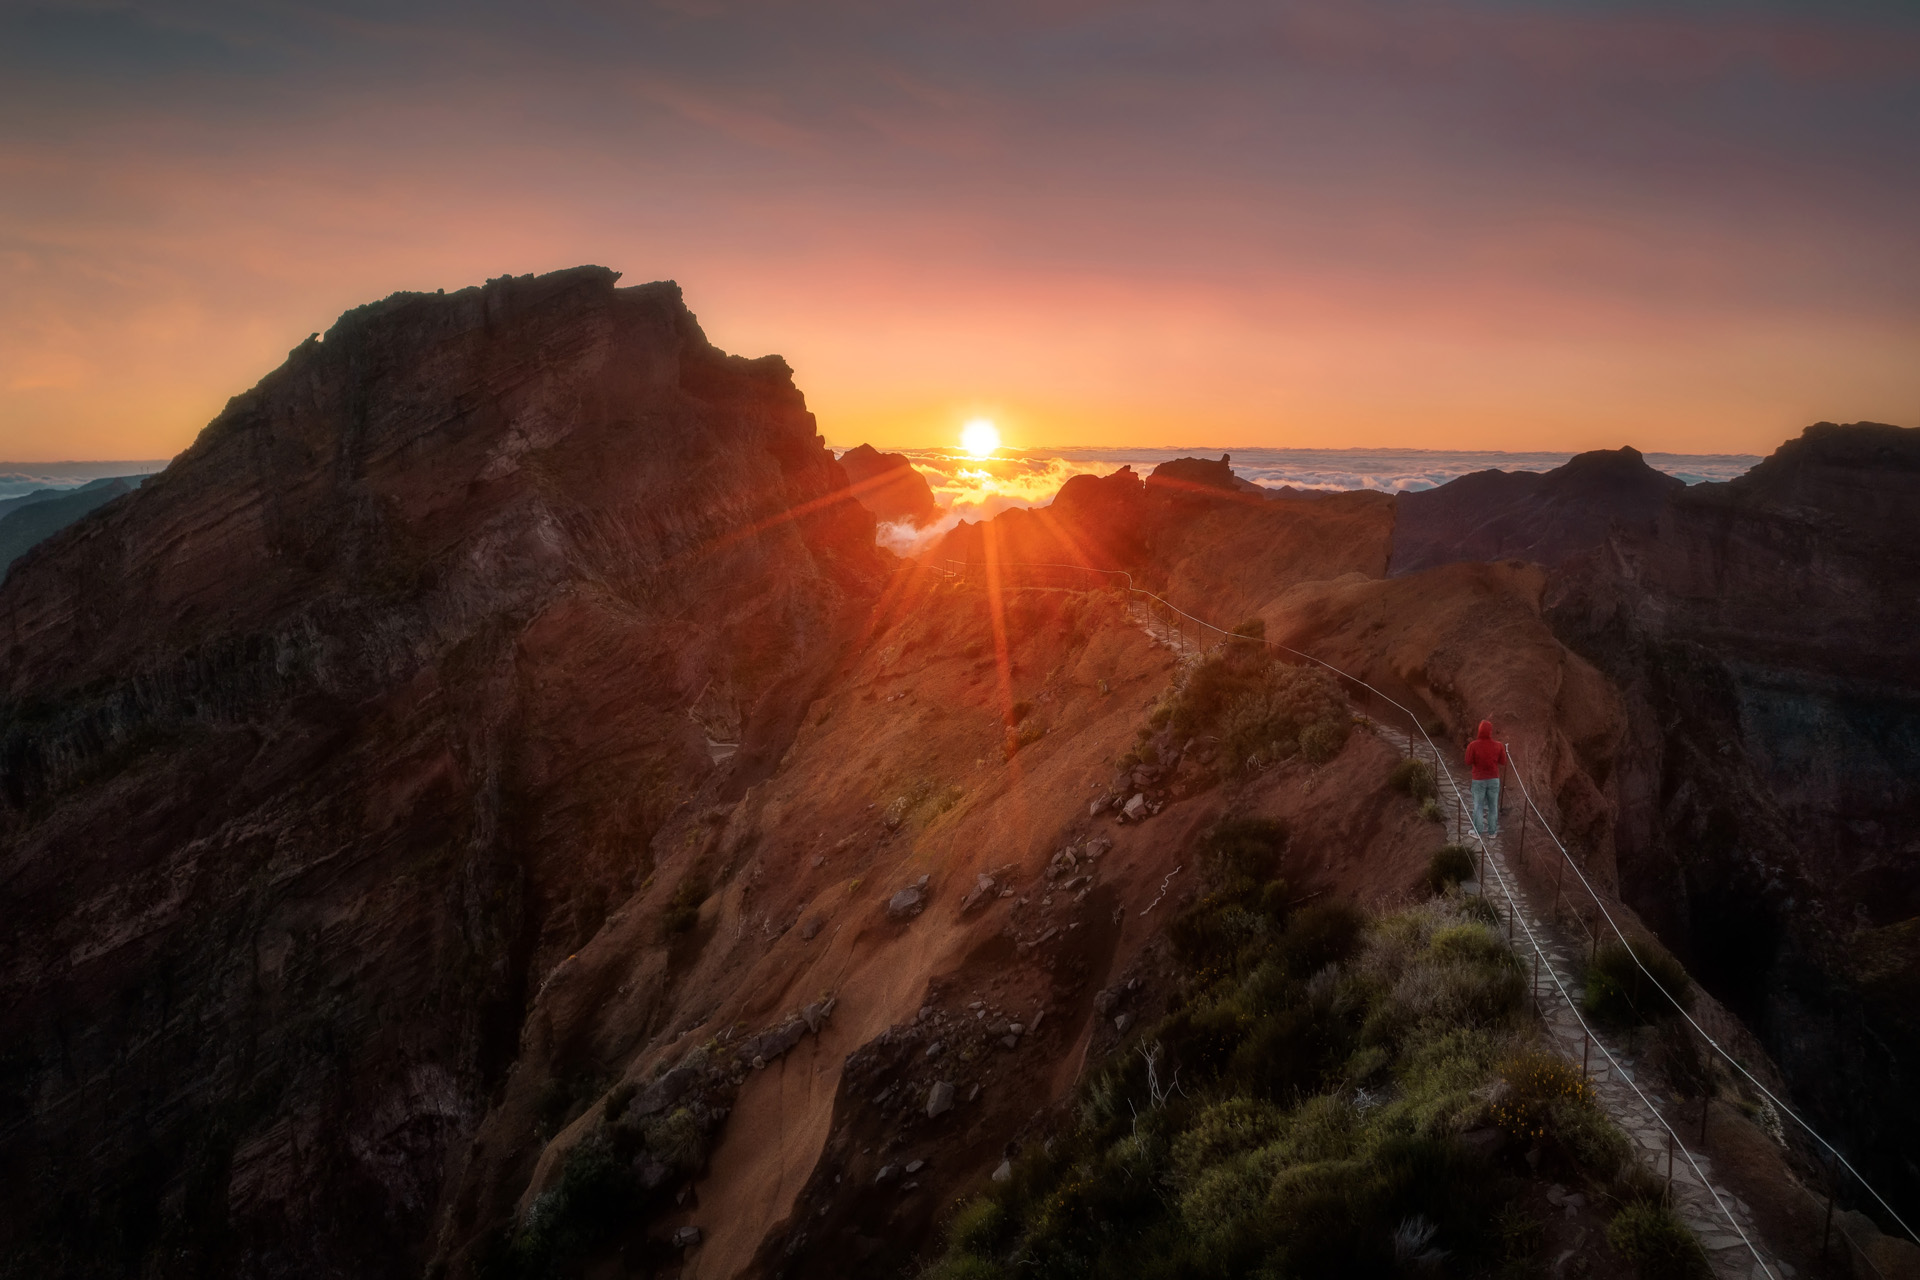 Pico Arieiro to Ruivo hike on Madeira, Portugal , post processed using exposure bracketing